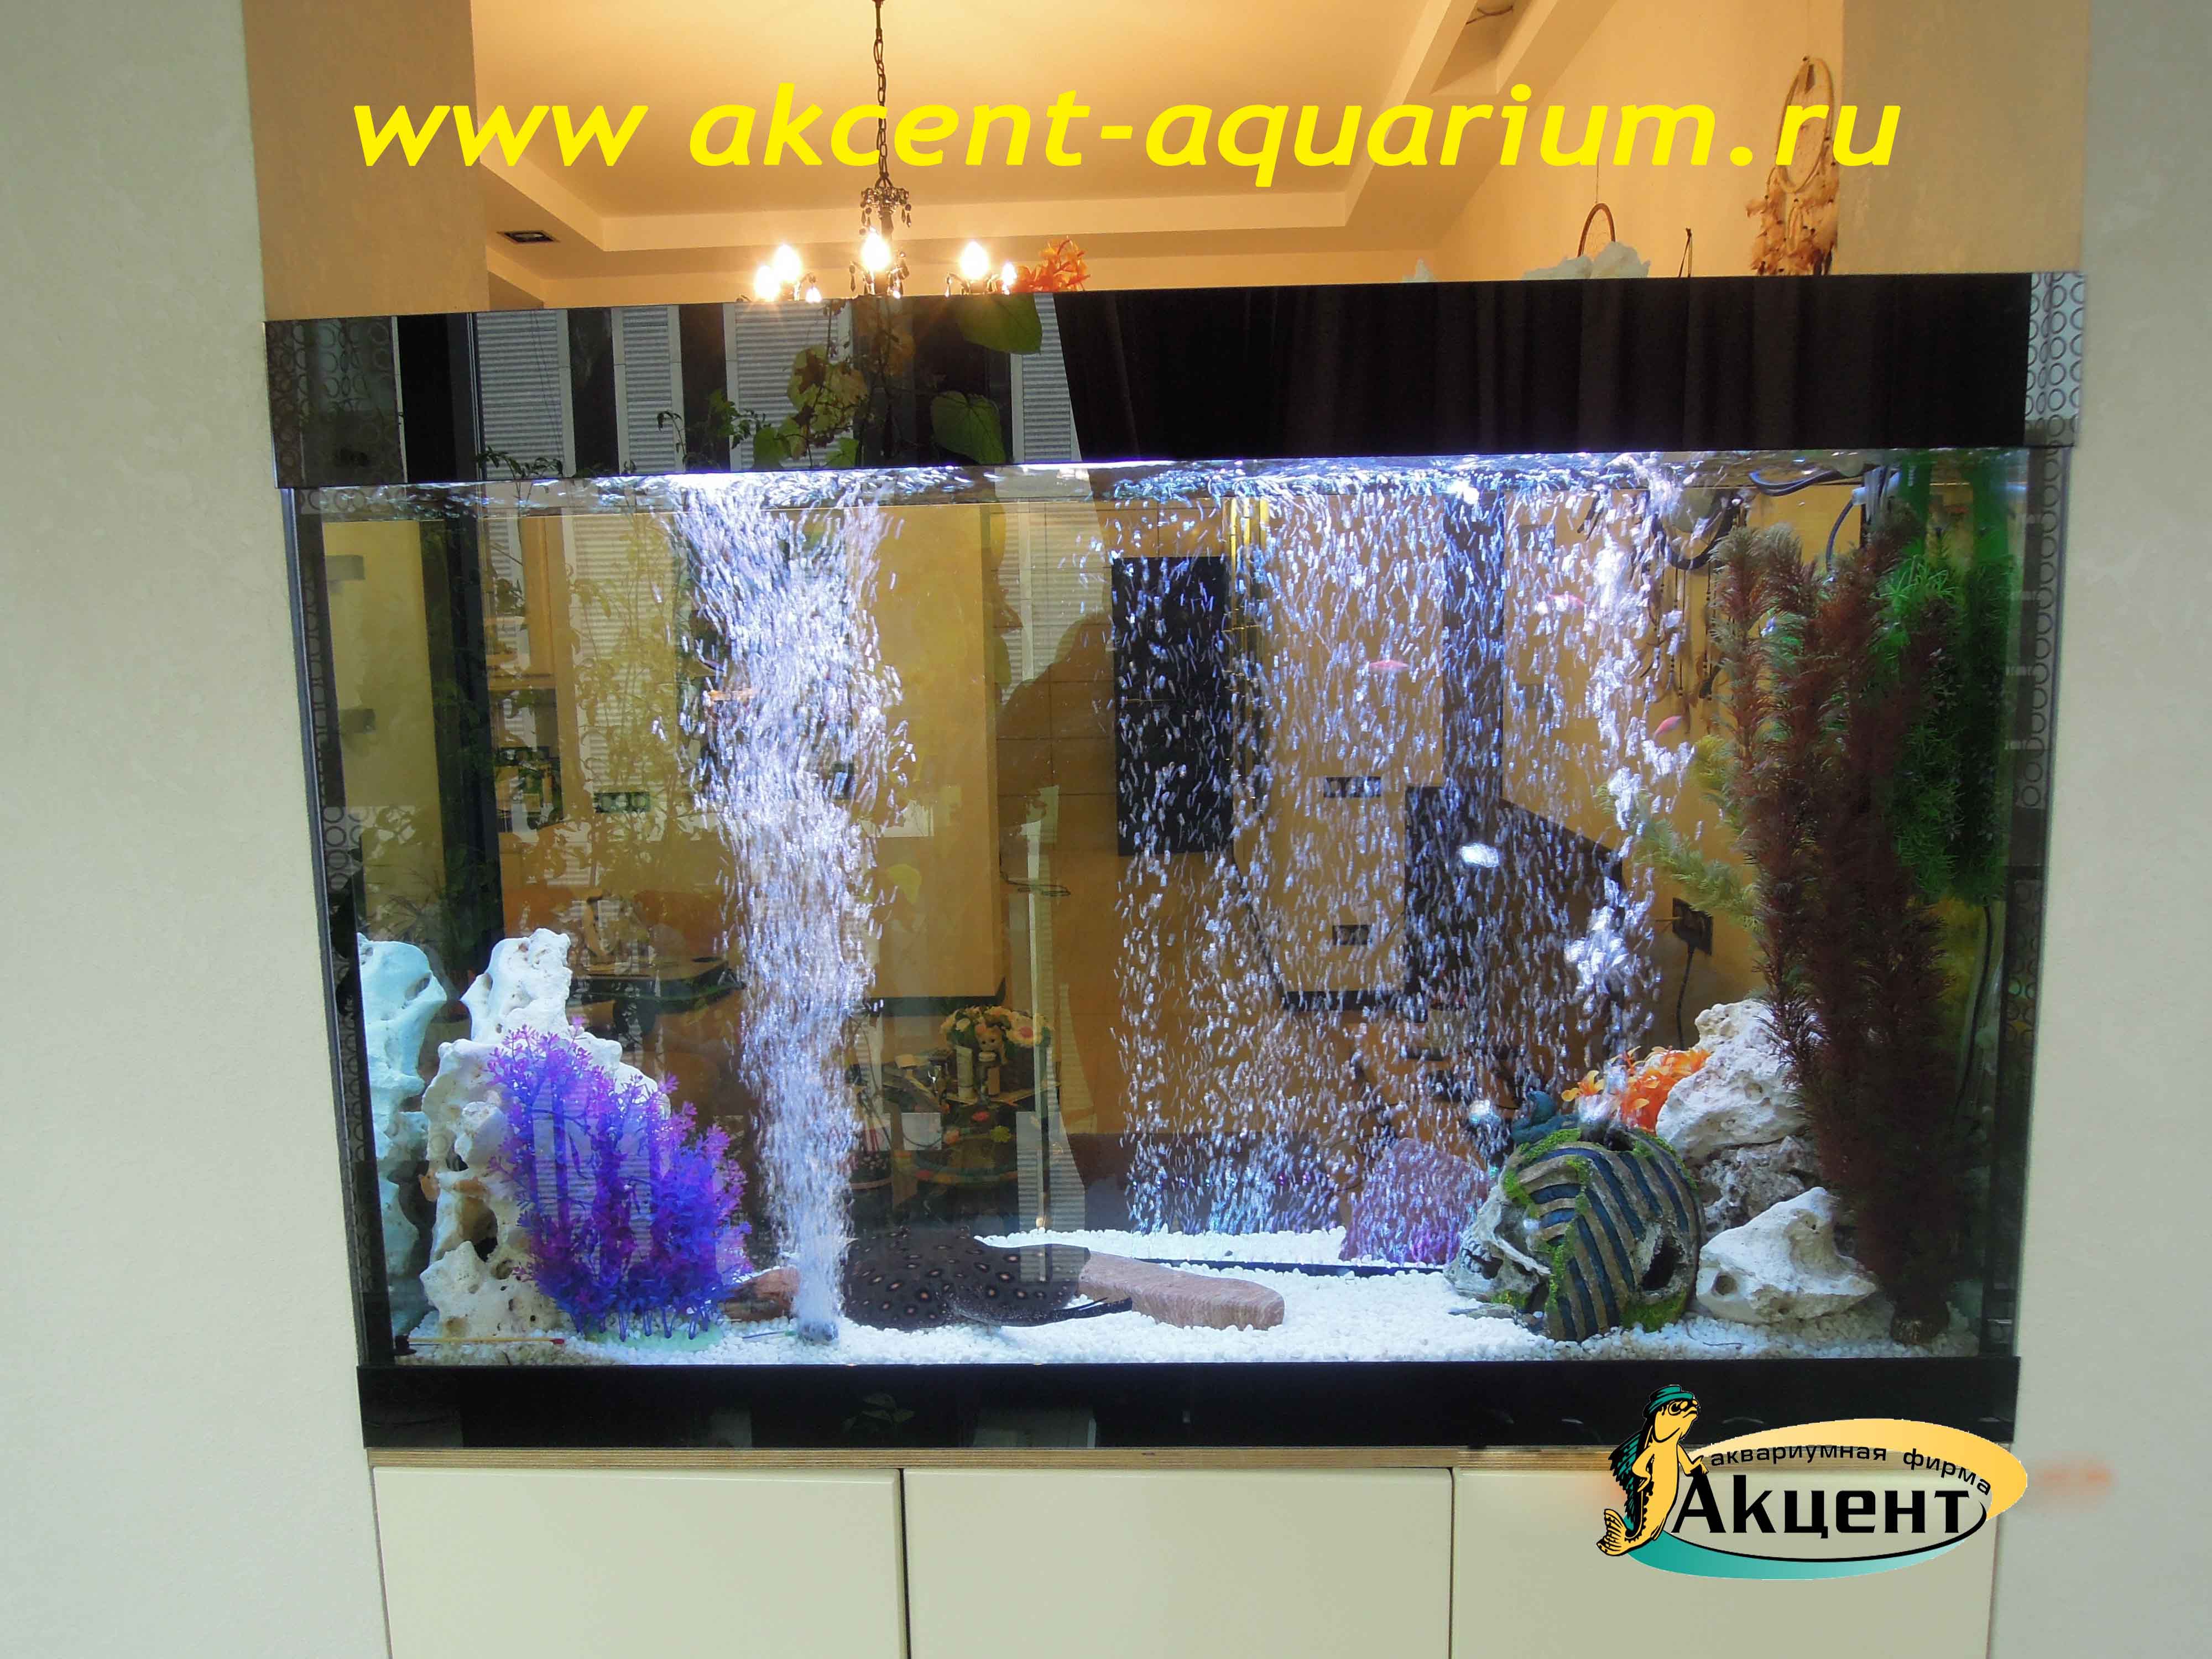 Акцент-аквариум,морской аквариум 400 литров встроенный в стену, вид со стороны комнаты